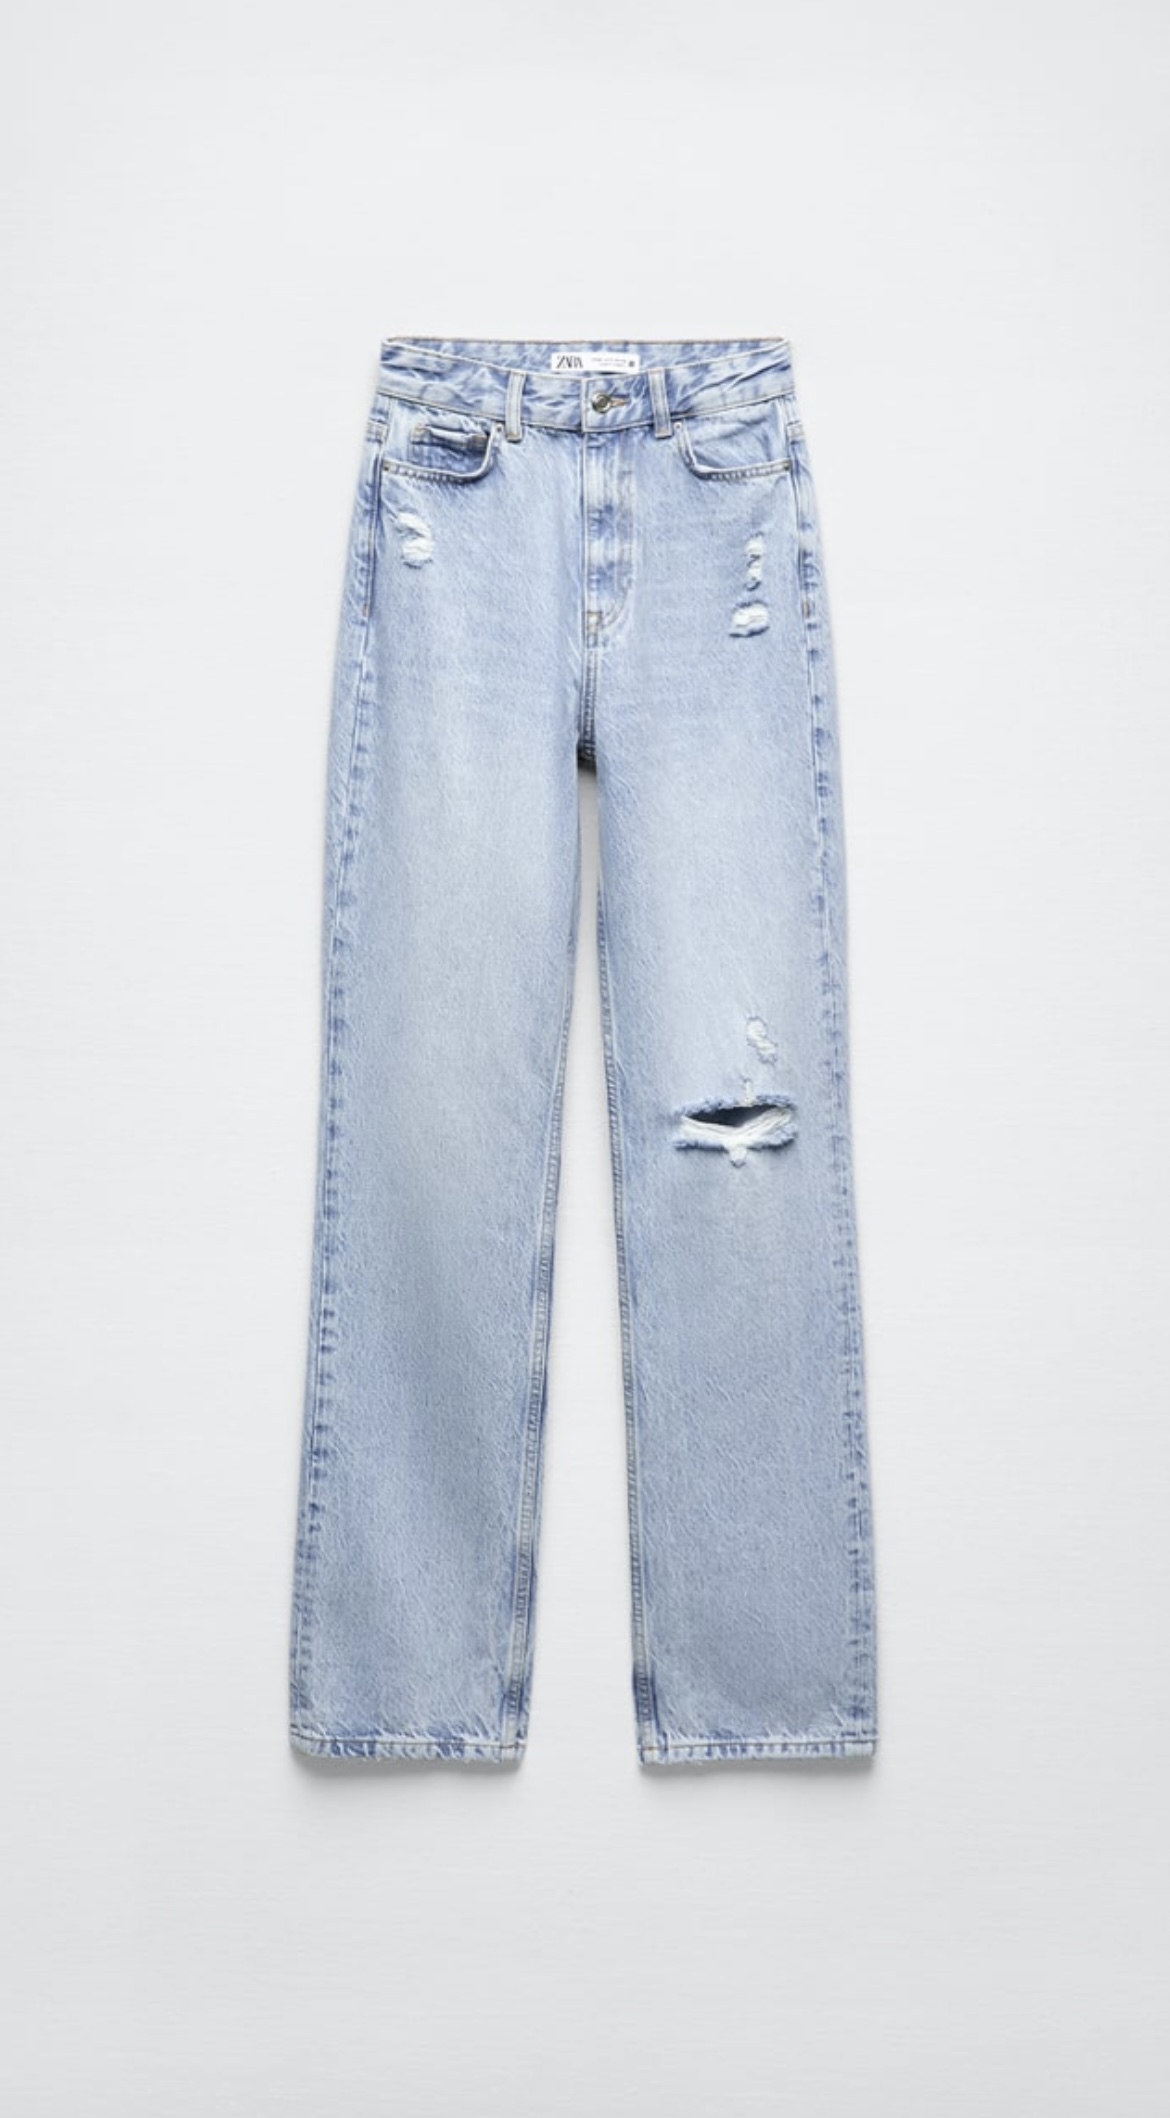 Jeans de Zara (29,95 euros).